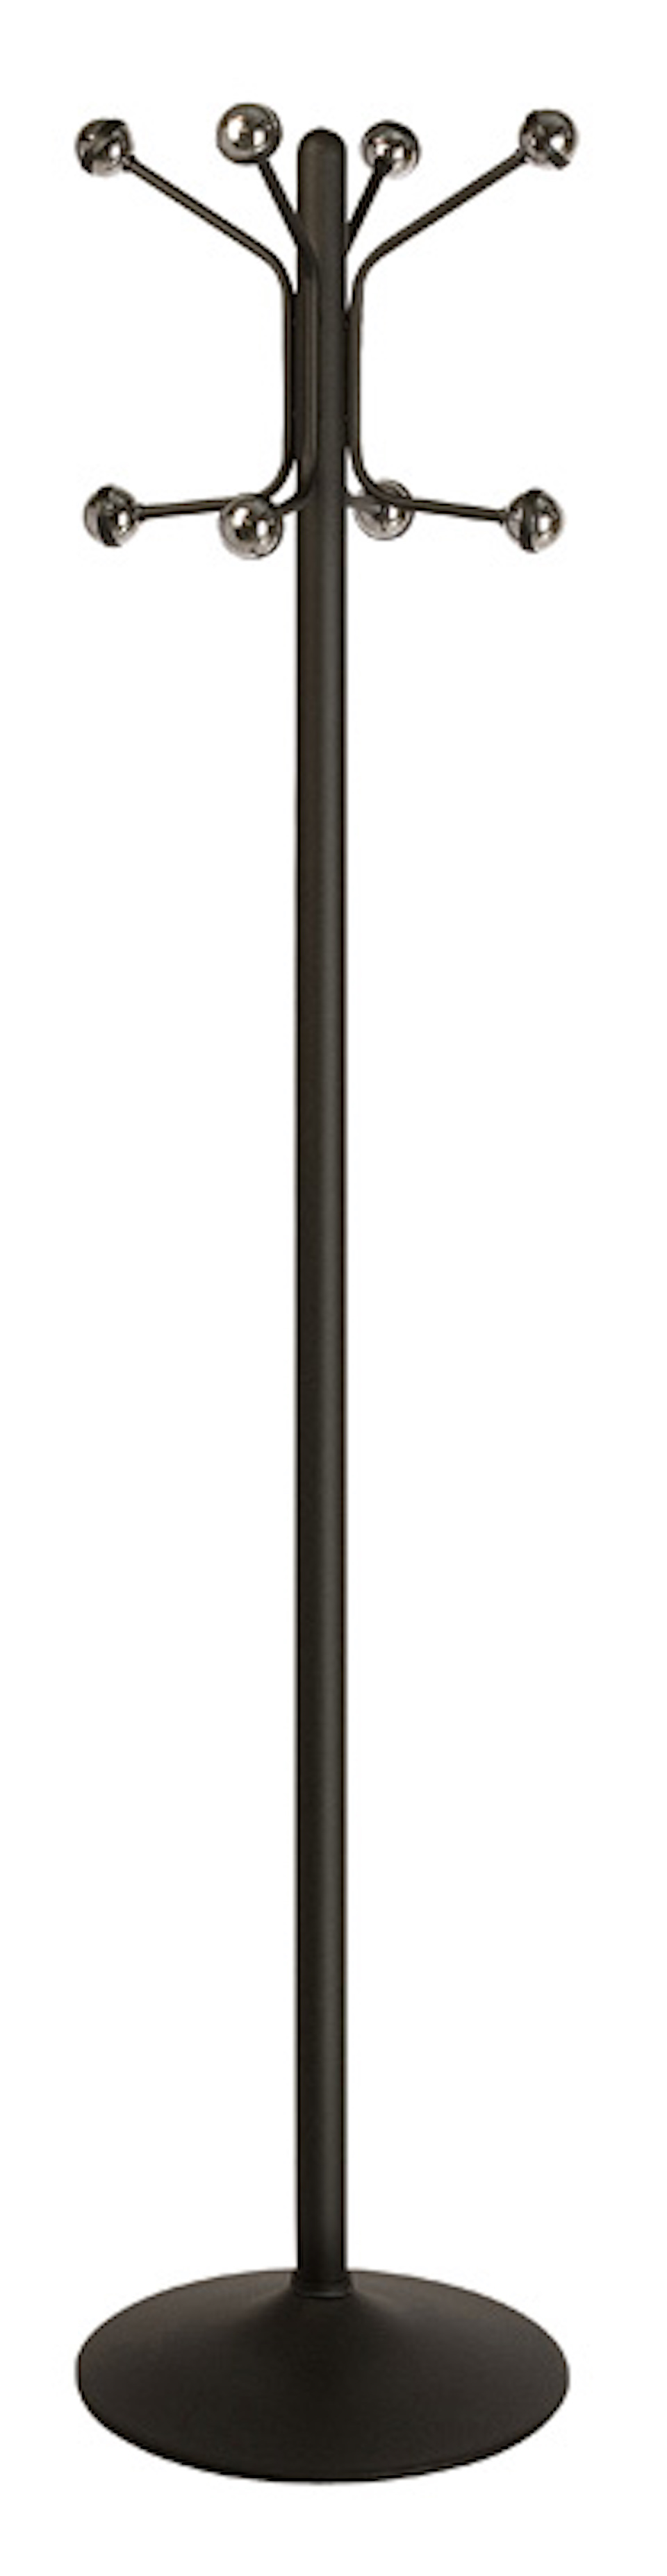 Freistehender Garderobenständer mit 8 Haken | Lackierter Stahl | Höhe 173cm | Schwarz